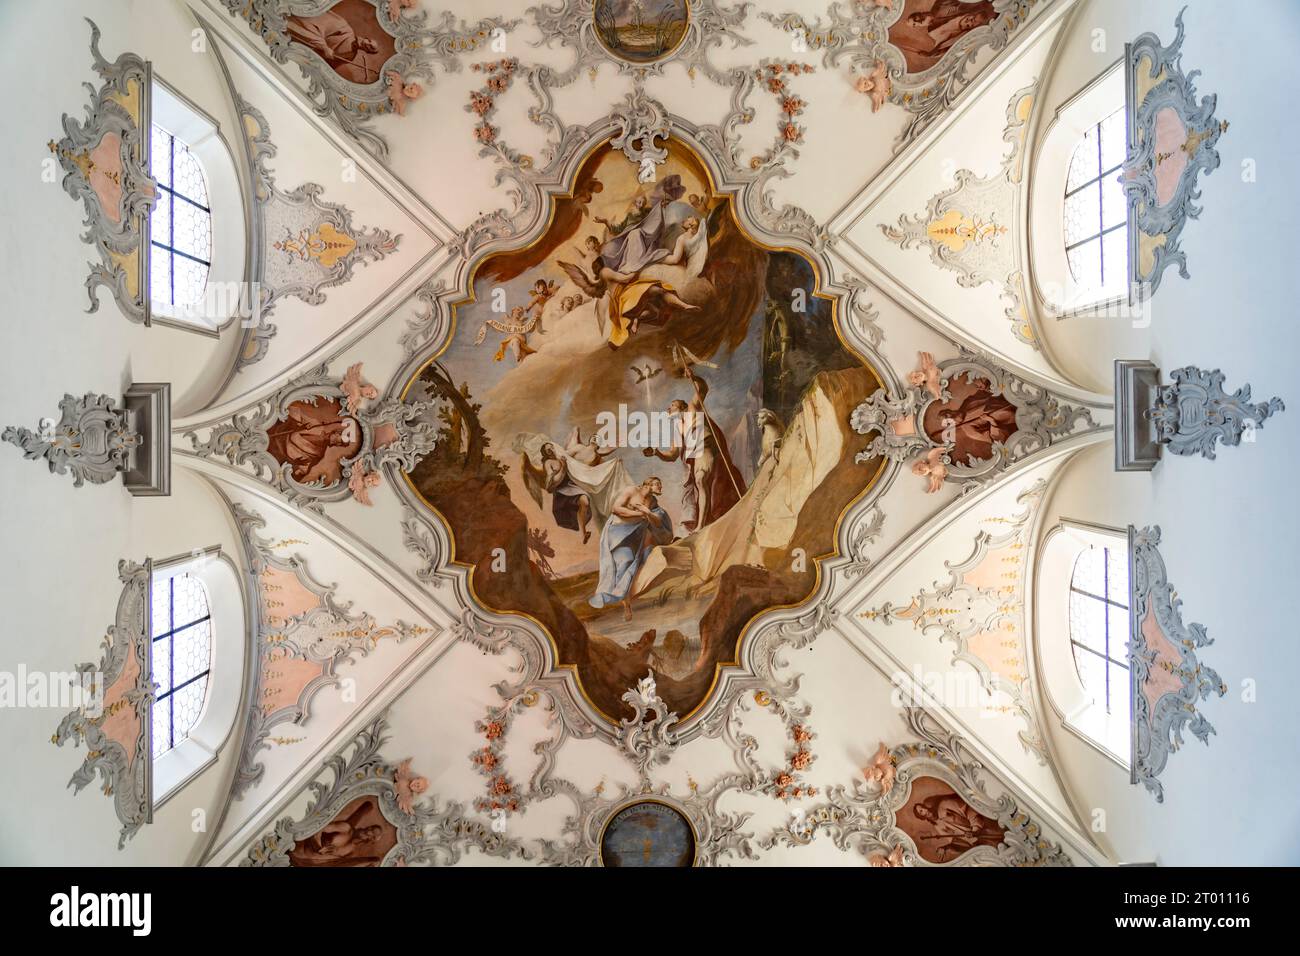 Deckenfresko im Innenraum der Stadtkirche Laufenburg, Aargau, Schweiz, Europa |   Ceiling fresco of the Laufenburg parish church, Laufenburg, Aargau, Stock Photo